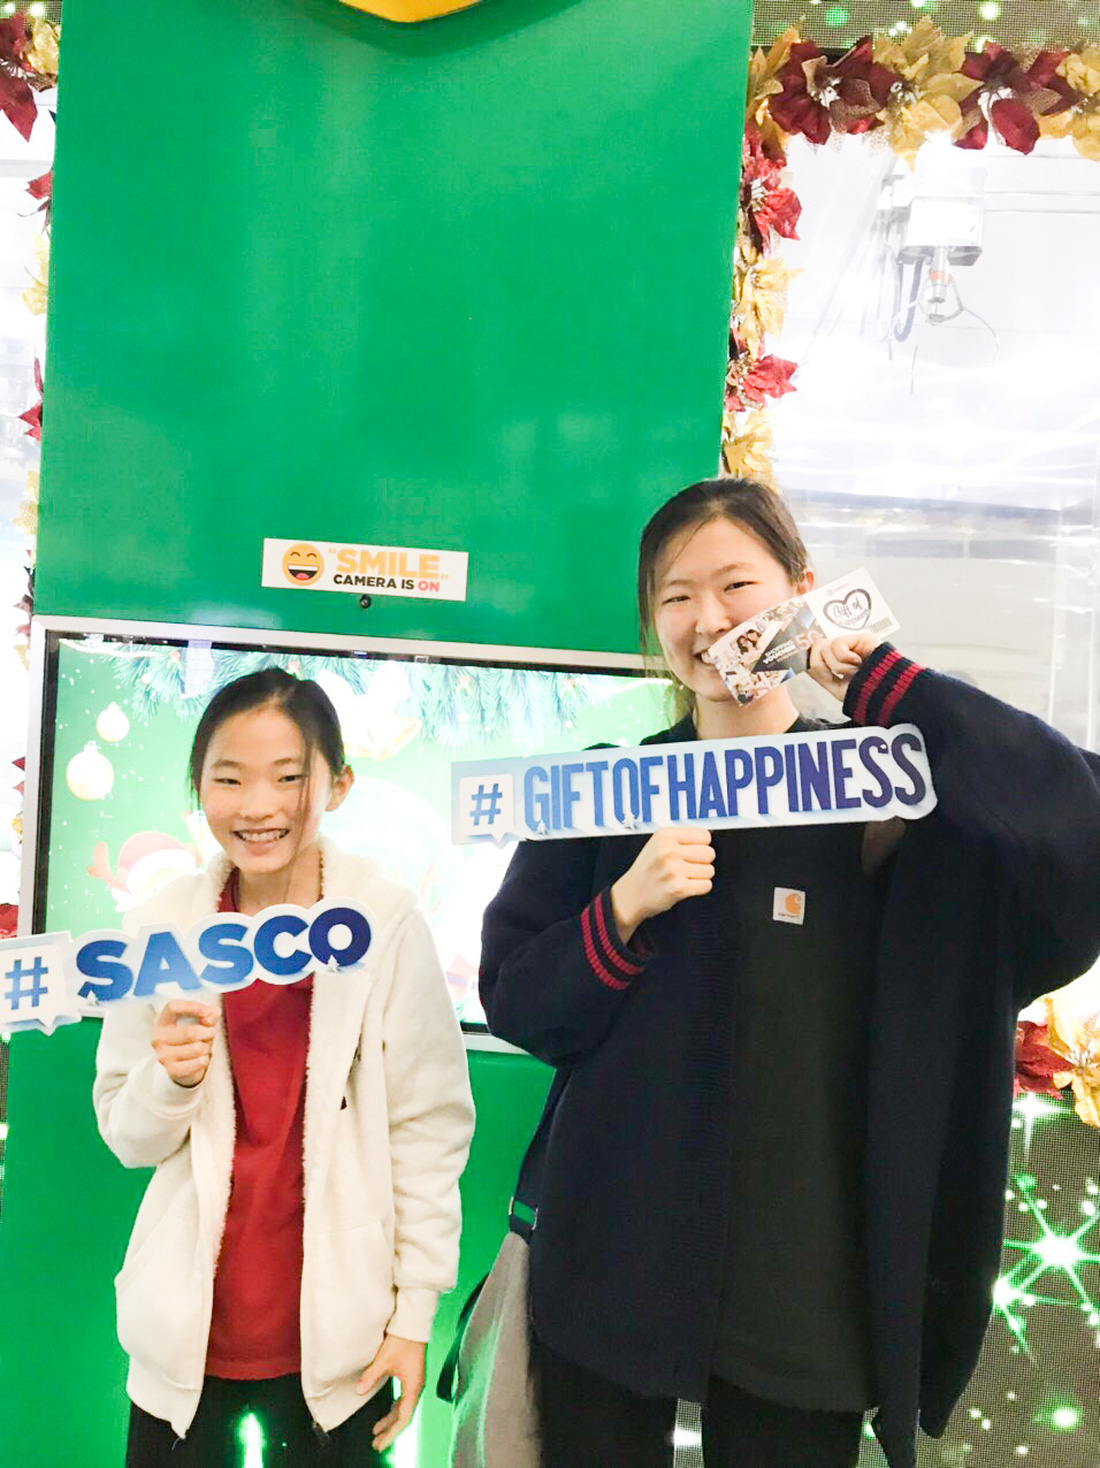 Hành khách tận hưởng cơn mưa quà tặng từ Gift of happiness - Ảnh 5.